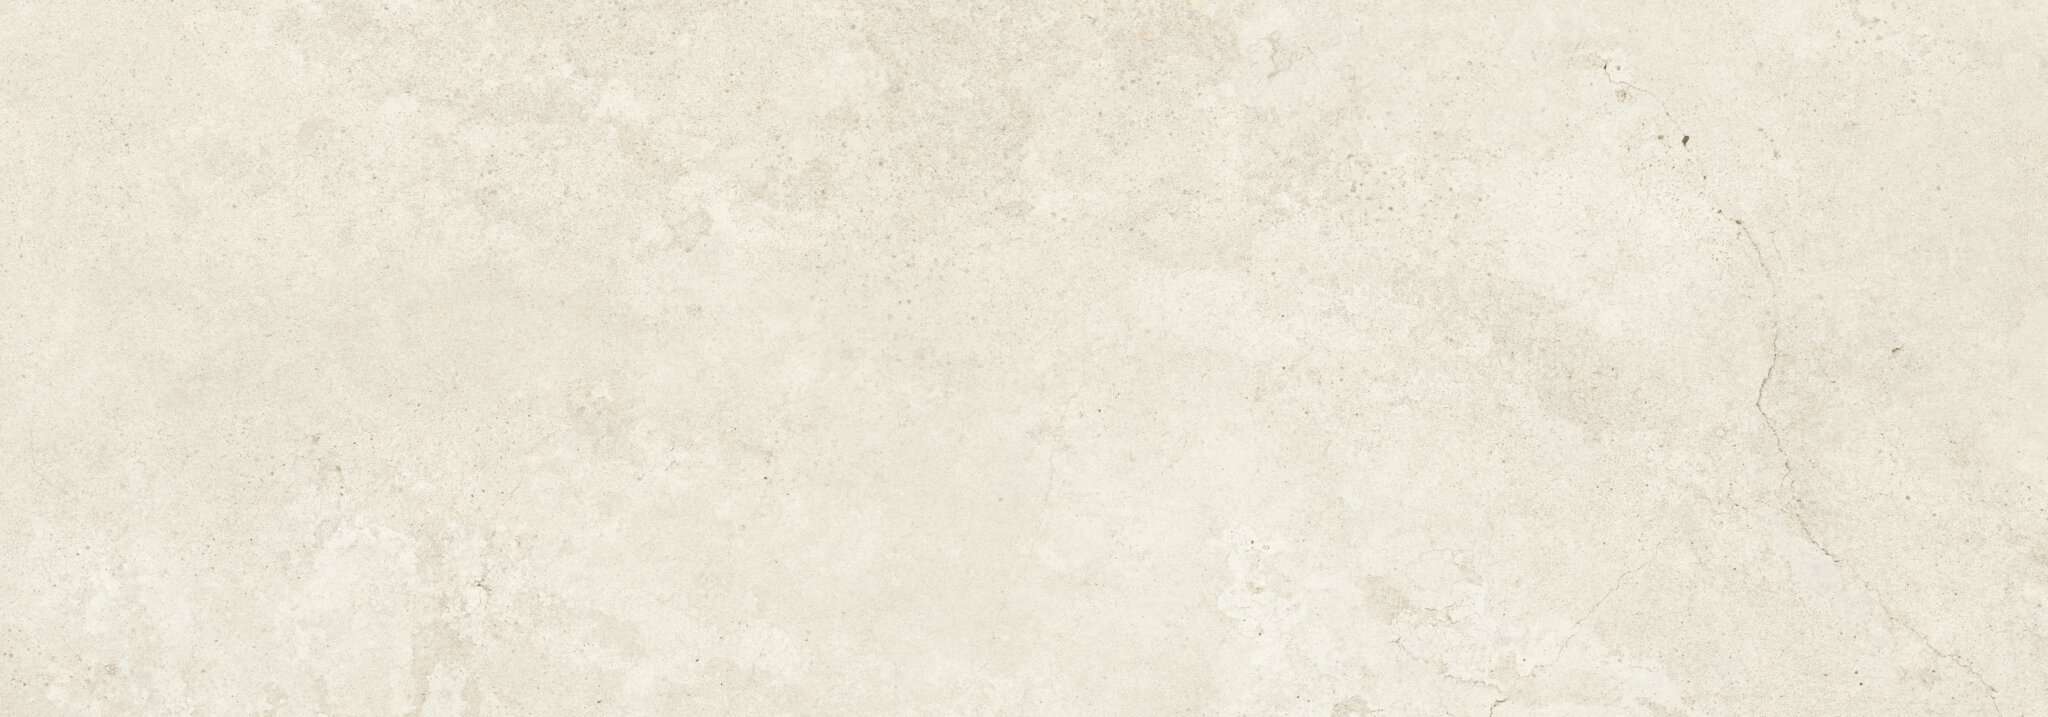 Agrob Buchtal Kiano Wandfliese sand weiß 35x100cm